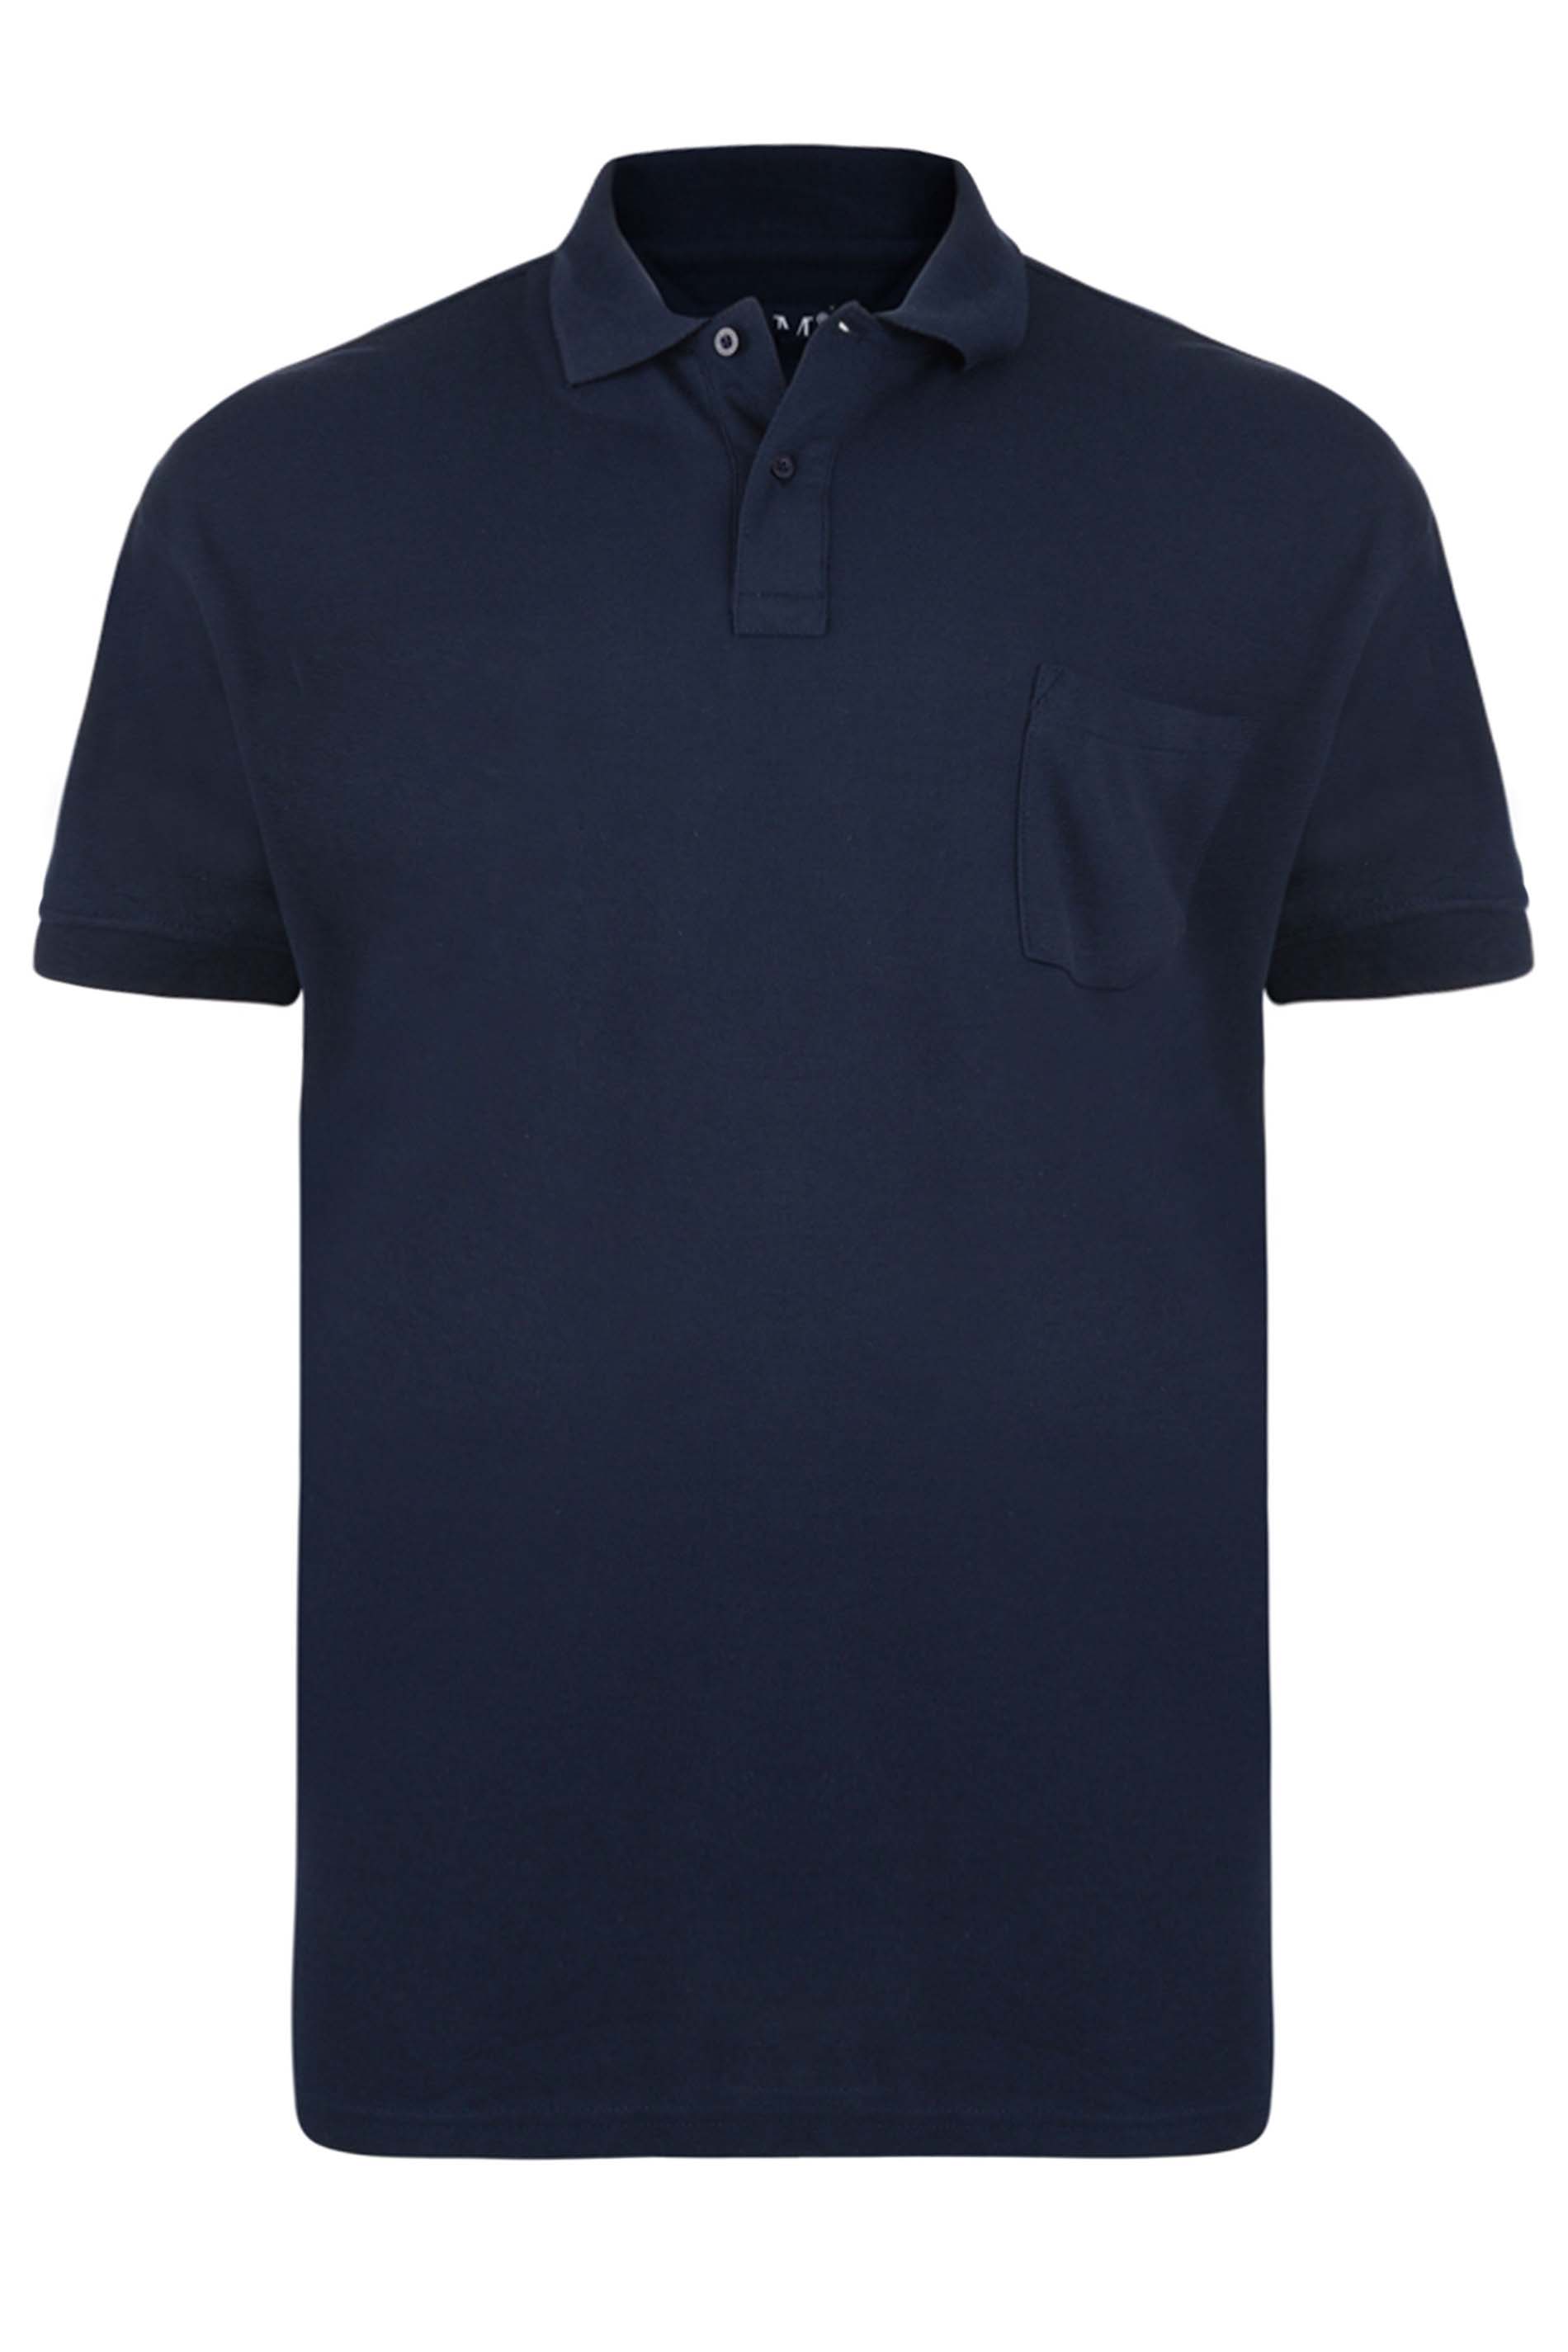 KAM Big & Tall Navy Blue Pocket Polo Shirt | BadRhino 2